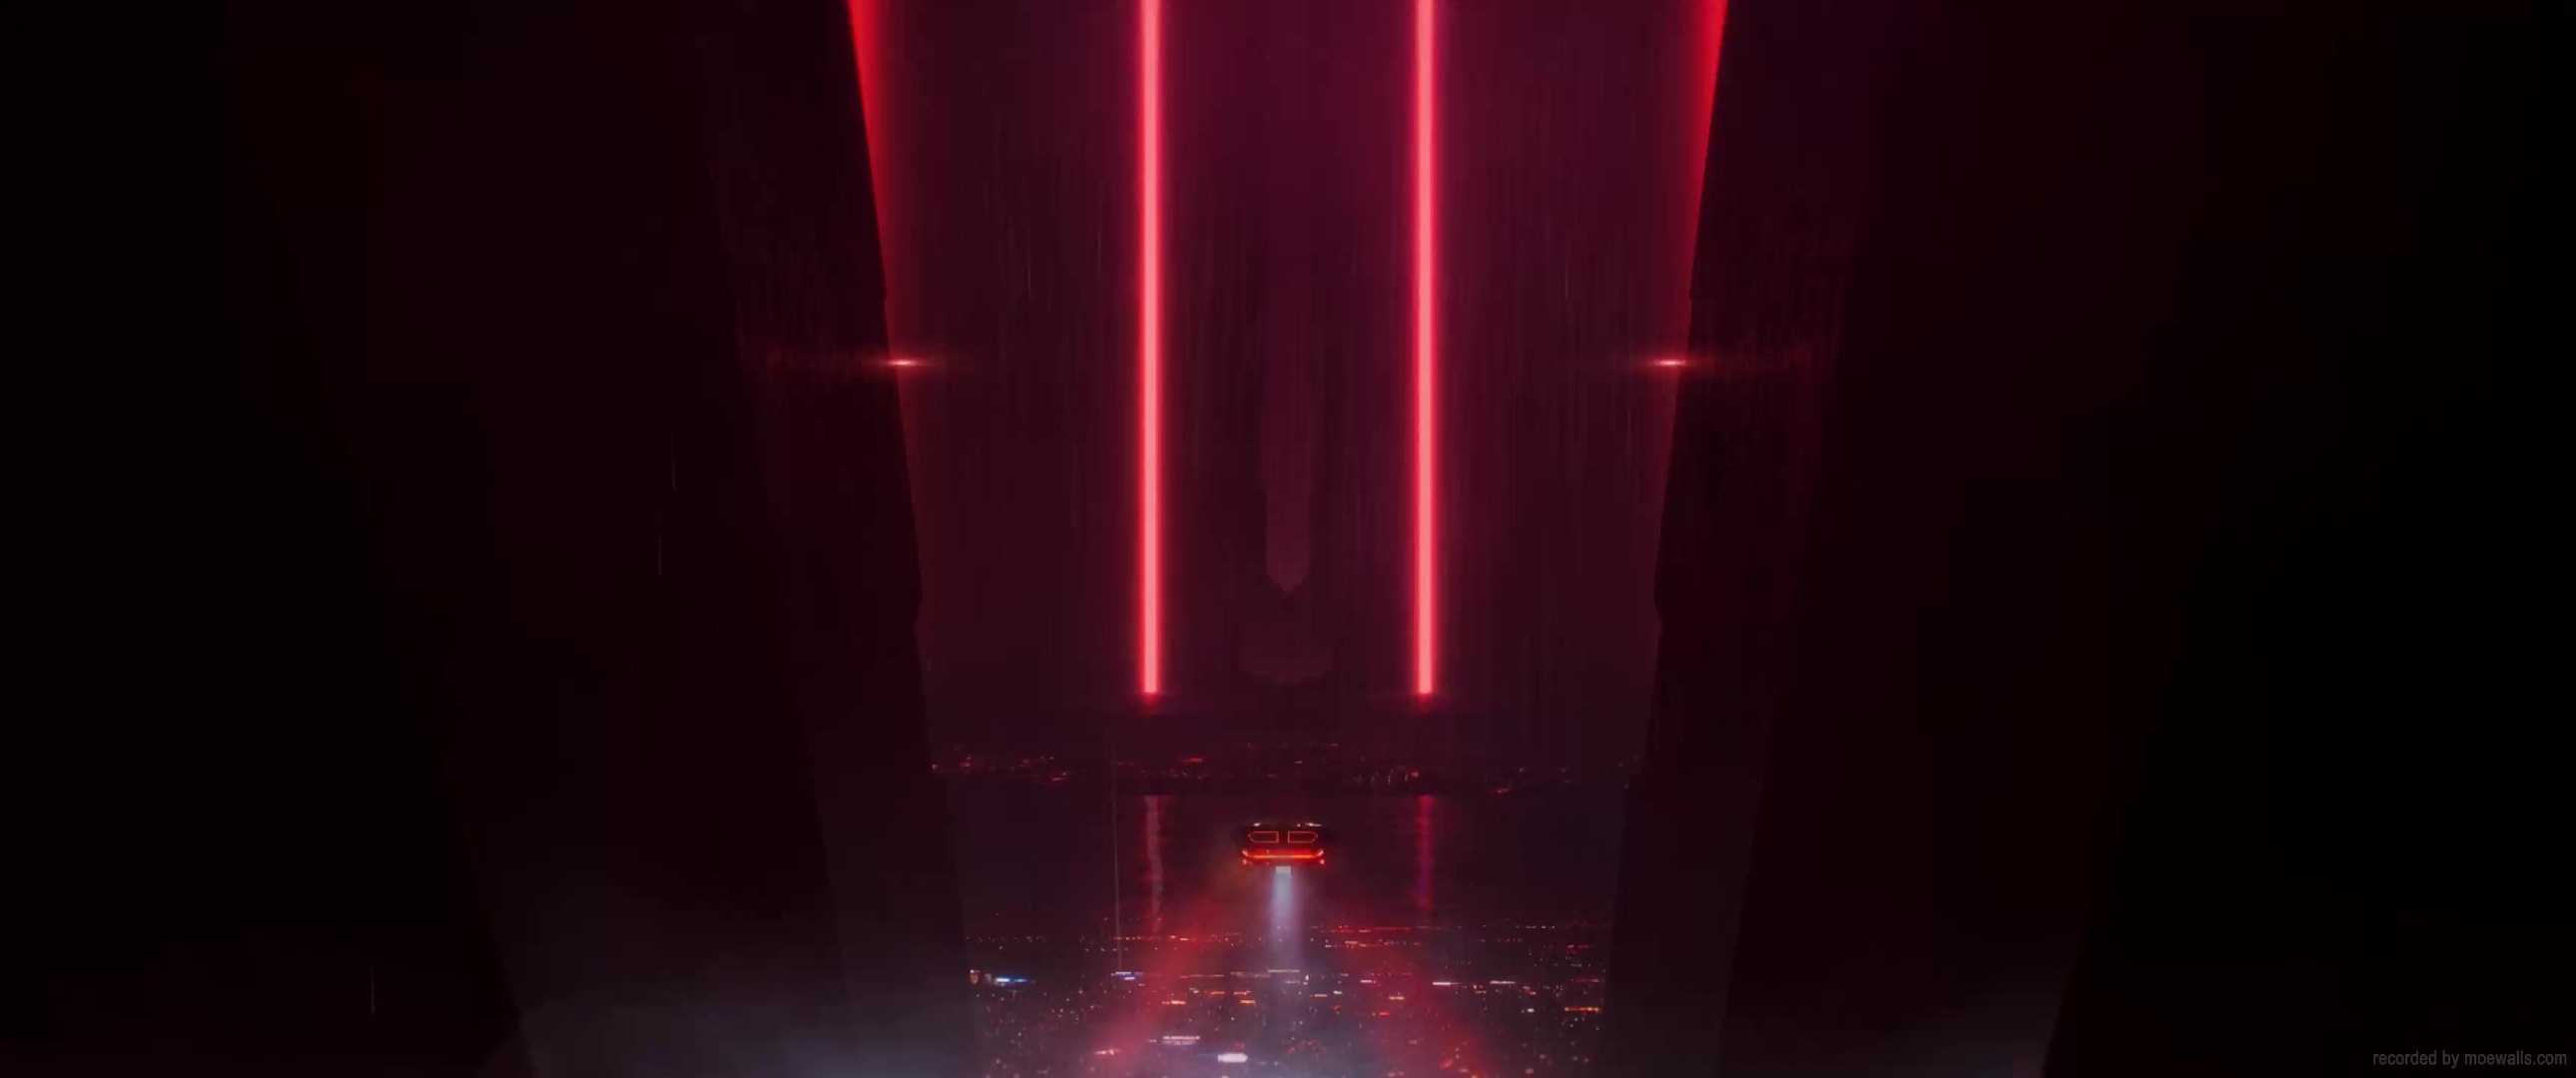 Blade Runner 2049 Wallpaper 4k by thephoenixprod on DeviantArt